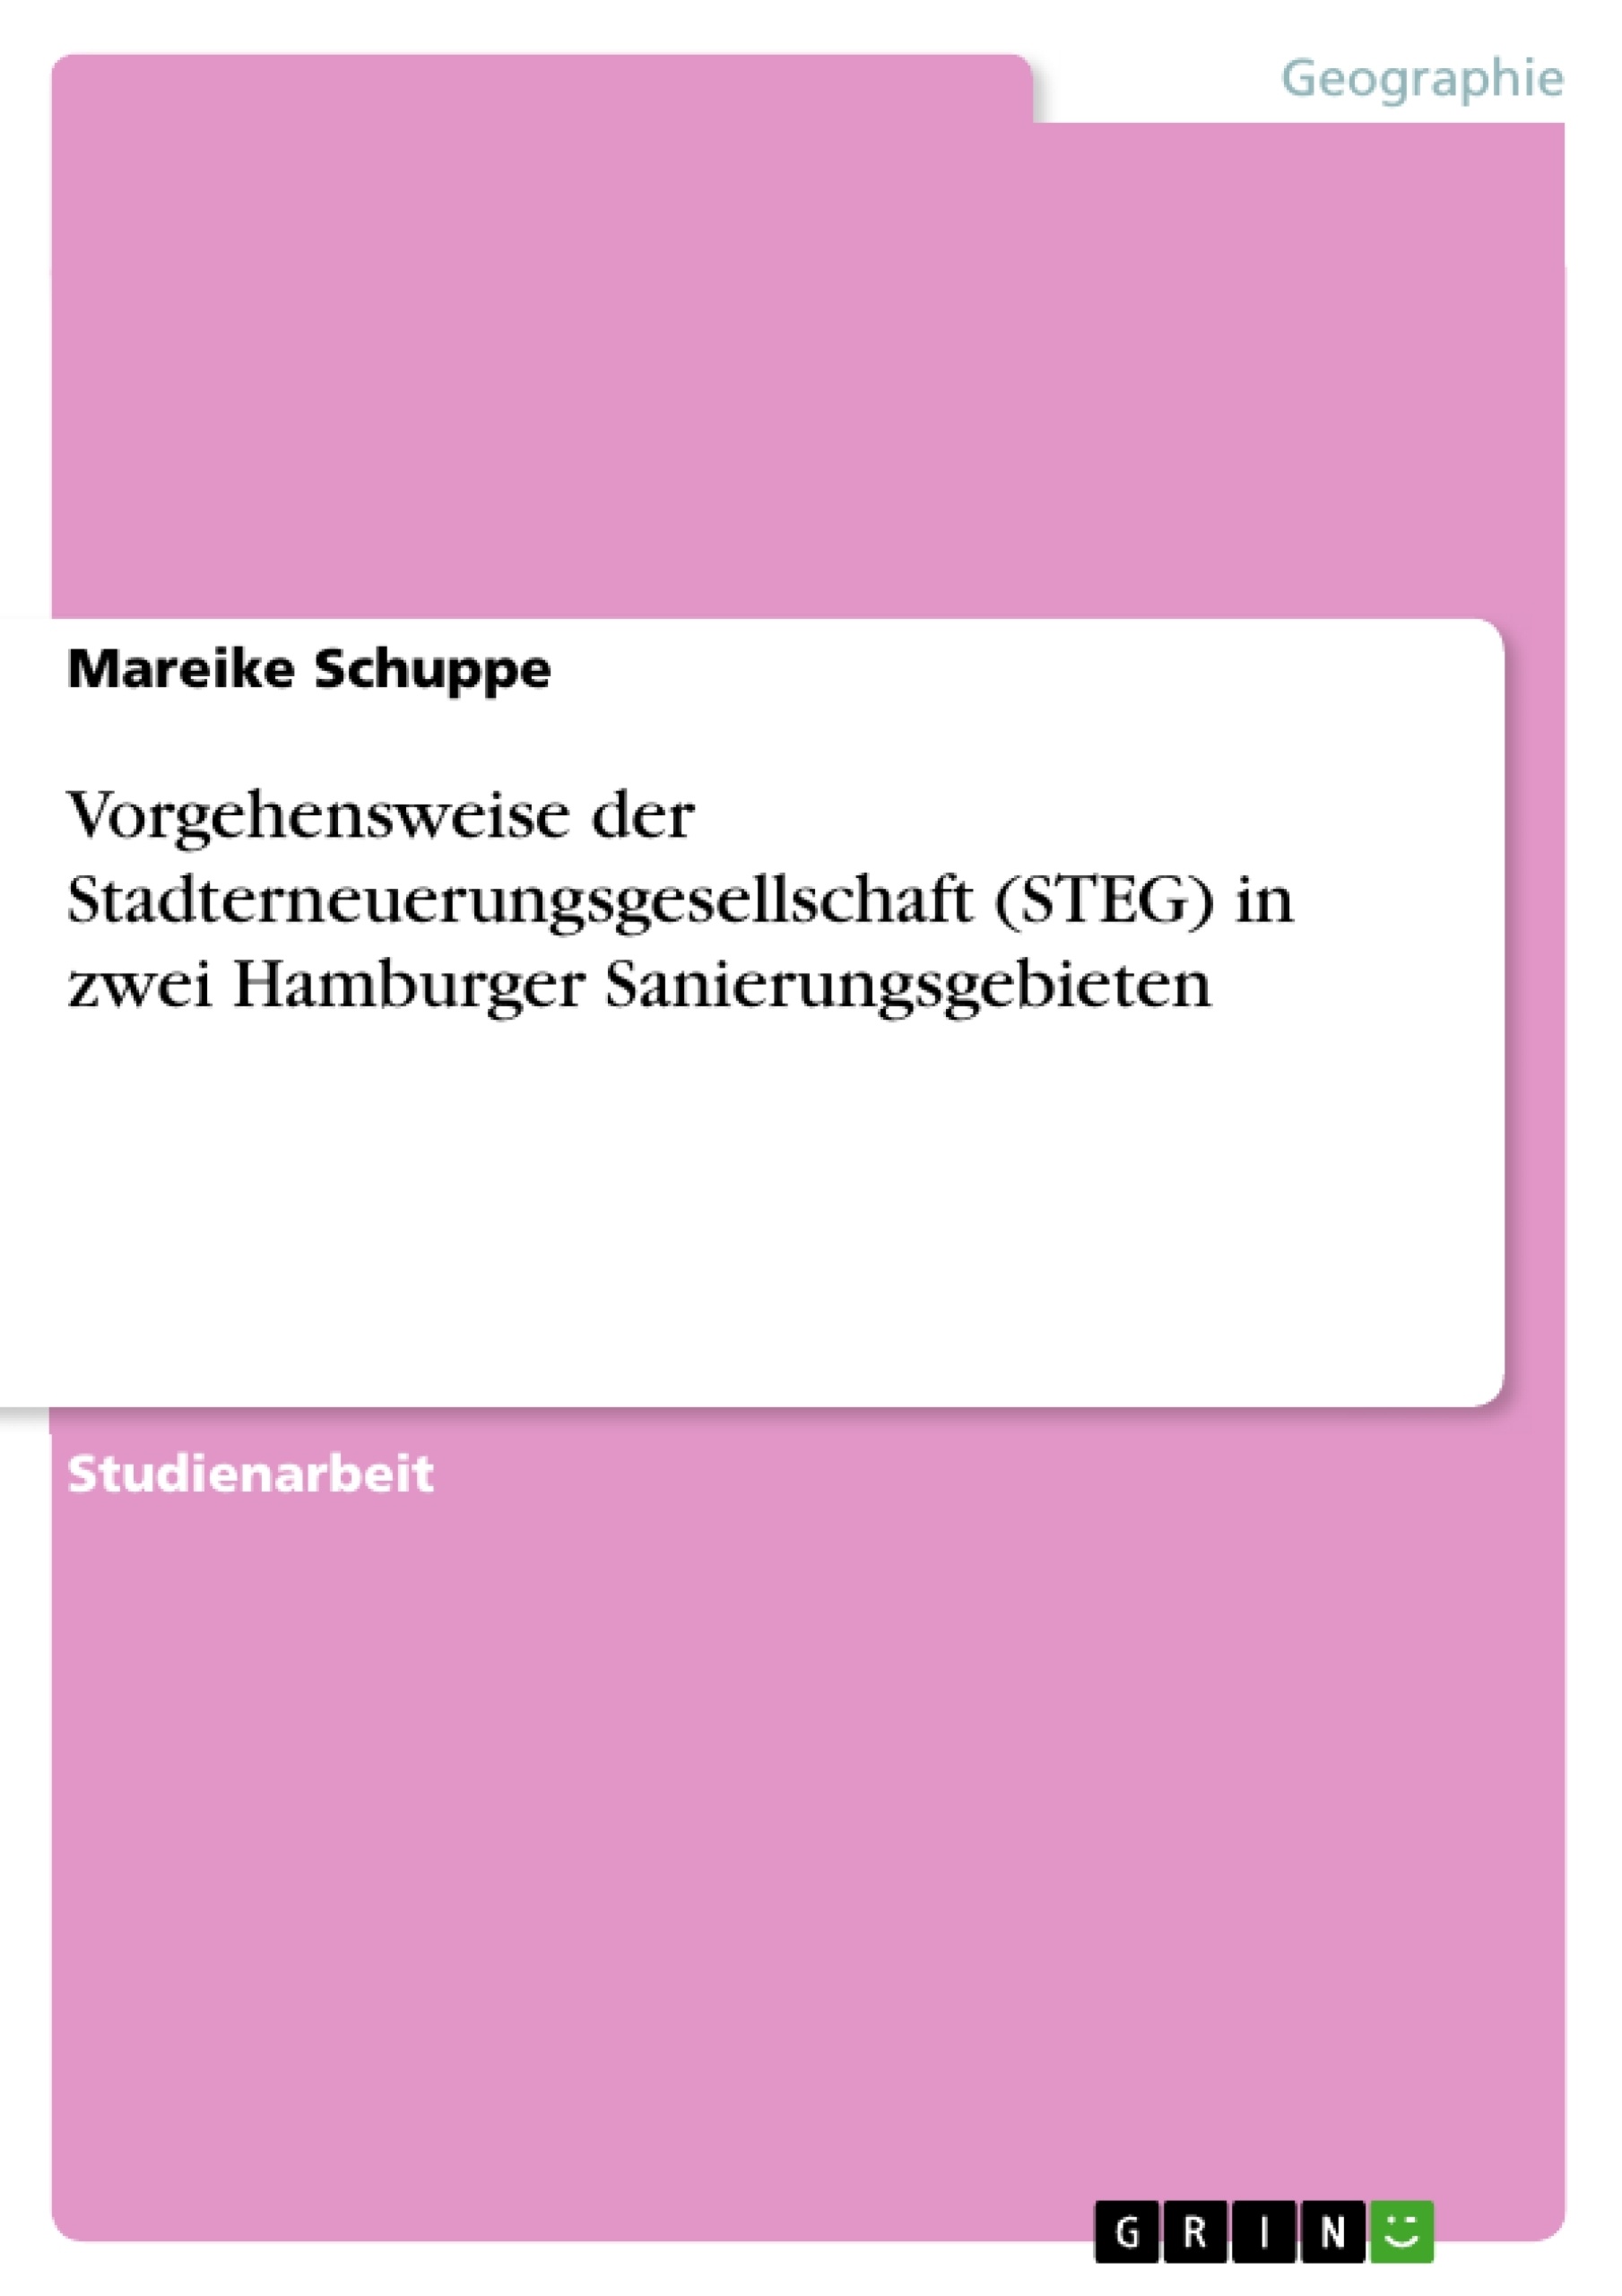 Titre: Vorgehensweise der Stadterneuerungsgesellschaft (STEG) in zwei Hamburger Sanierungsgebieten